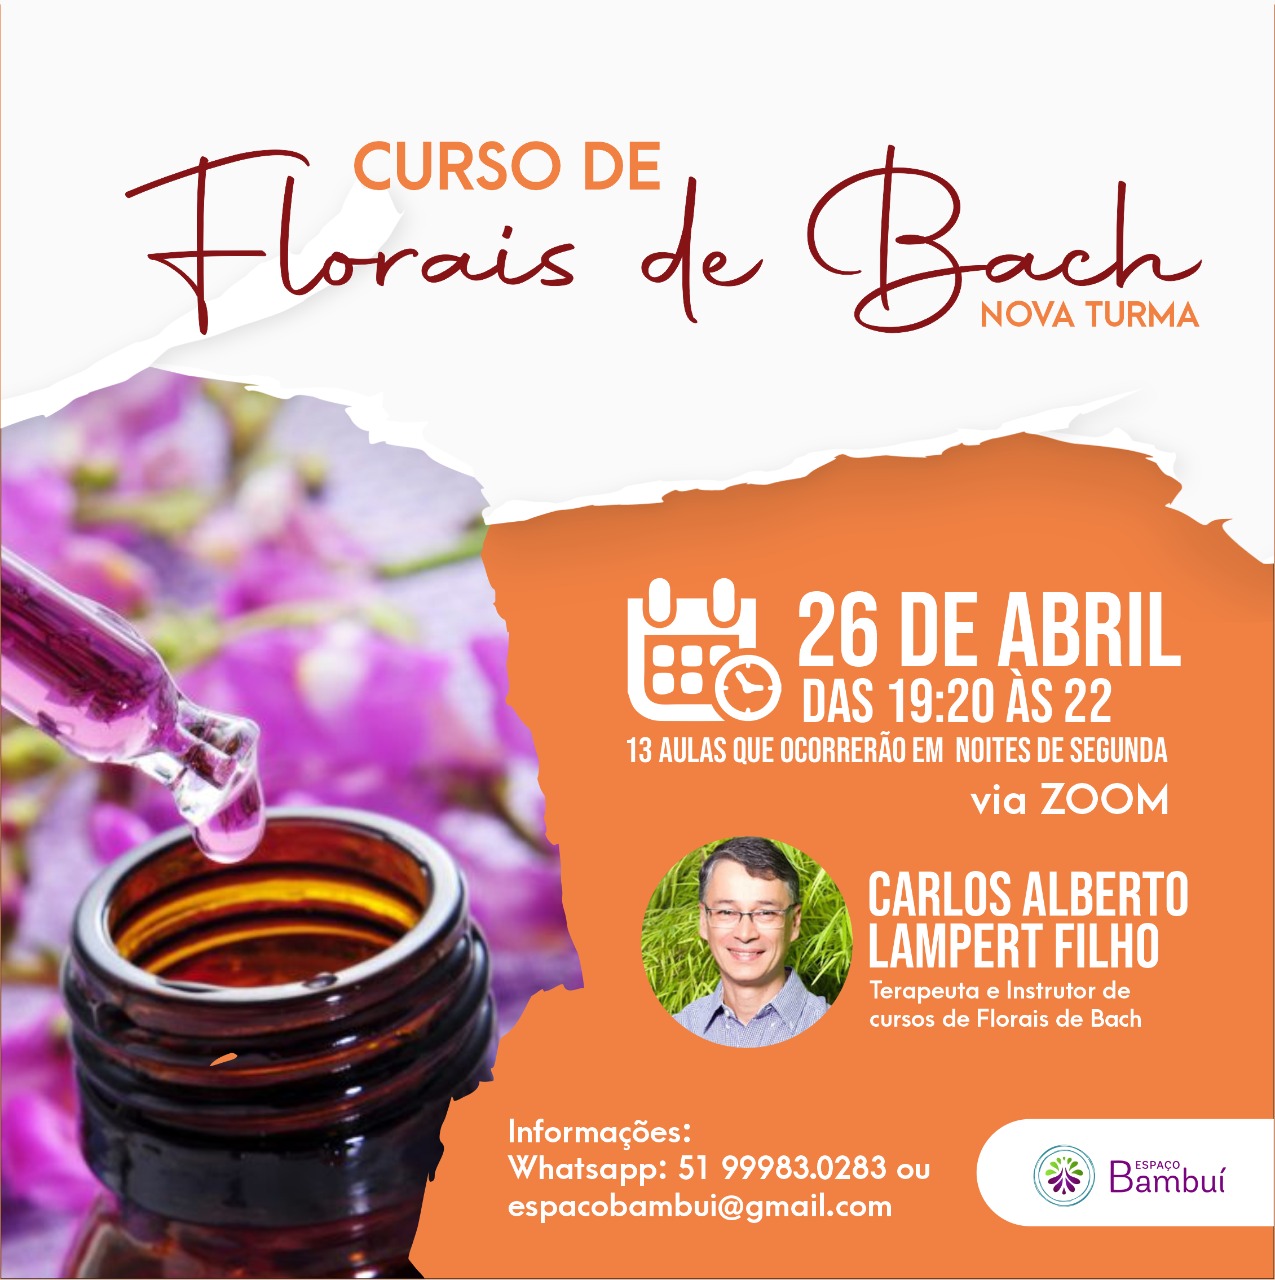 Curso de Florais de Bach Online em Canoas - Espaco Bambui